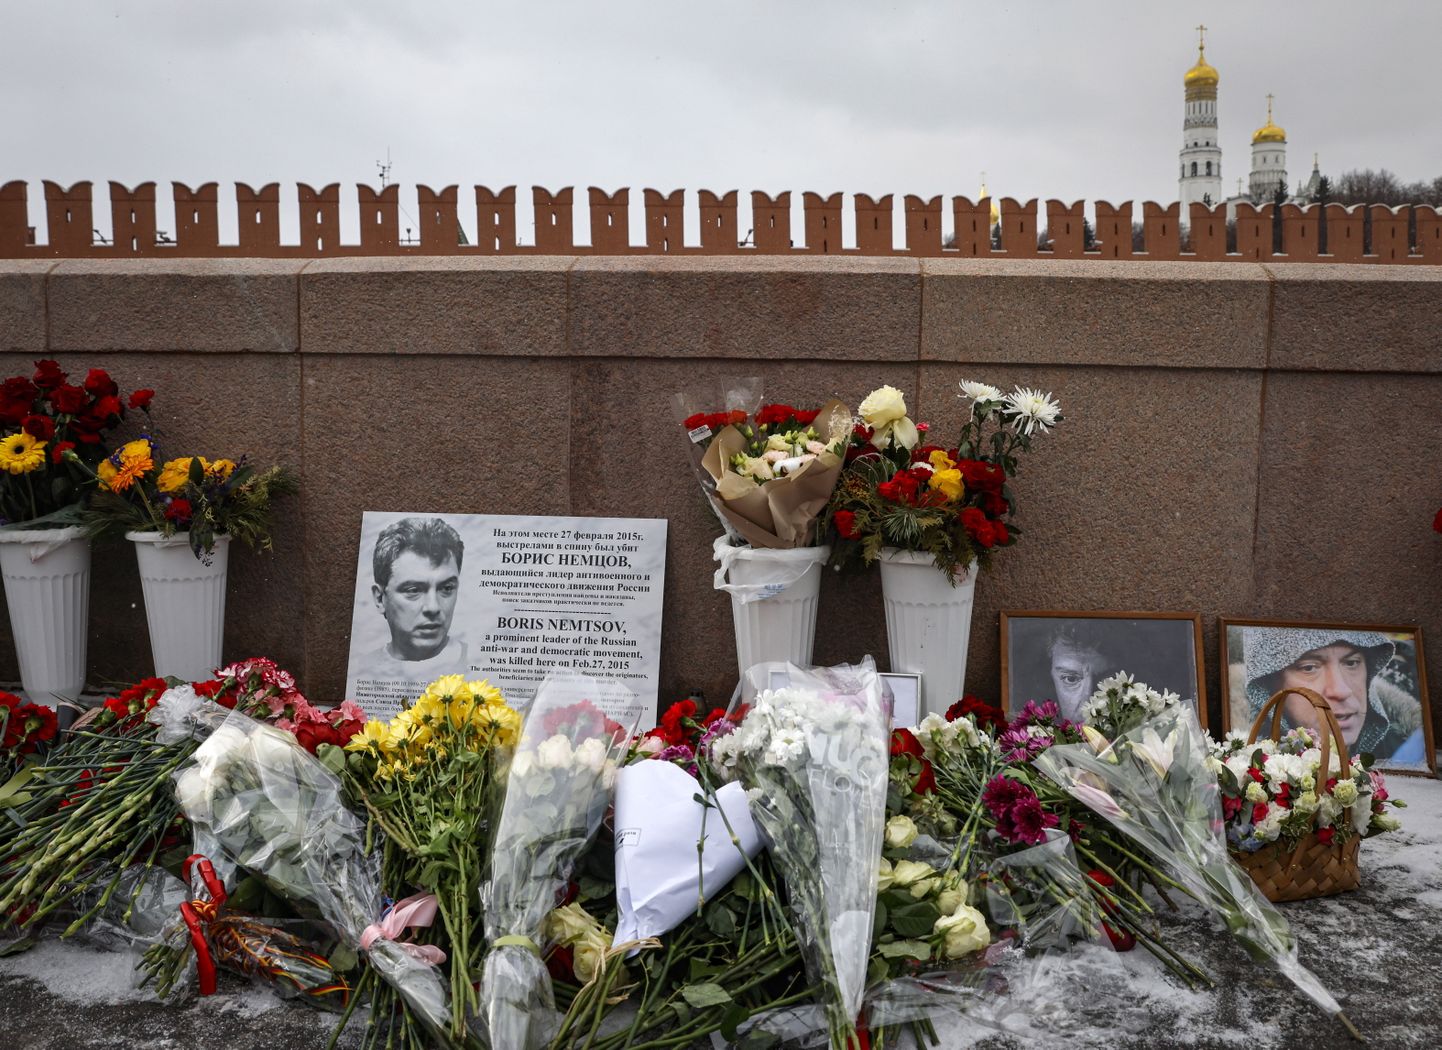 Inimesed mälestavad Moskvas lilledega ja fotodega 27. veebruaril 2015 Kremli lähedal mõrvatud opositsioonipoliitikut Boriss Nemtsovi